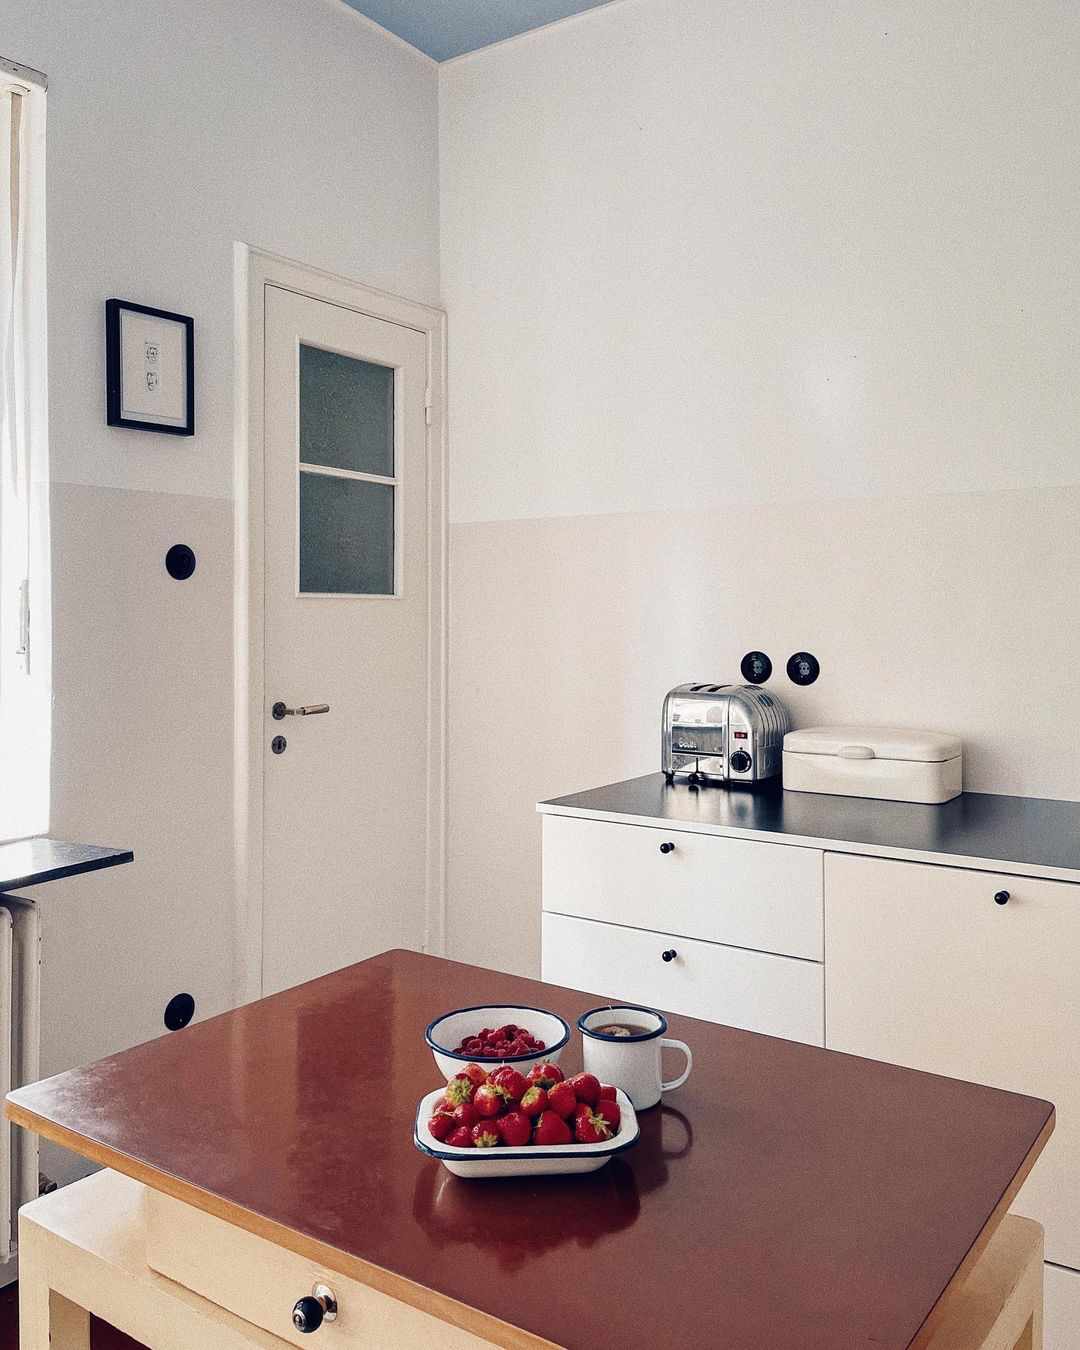 Cozinha minimalista branca Art Déco dos anos 20